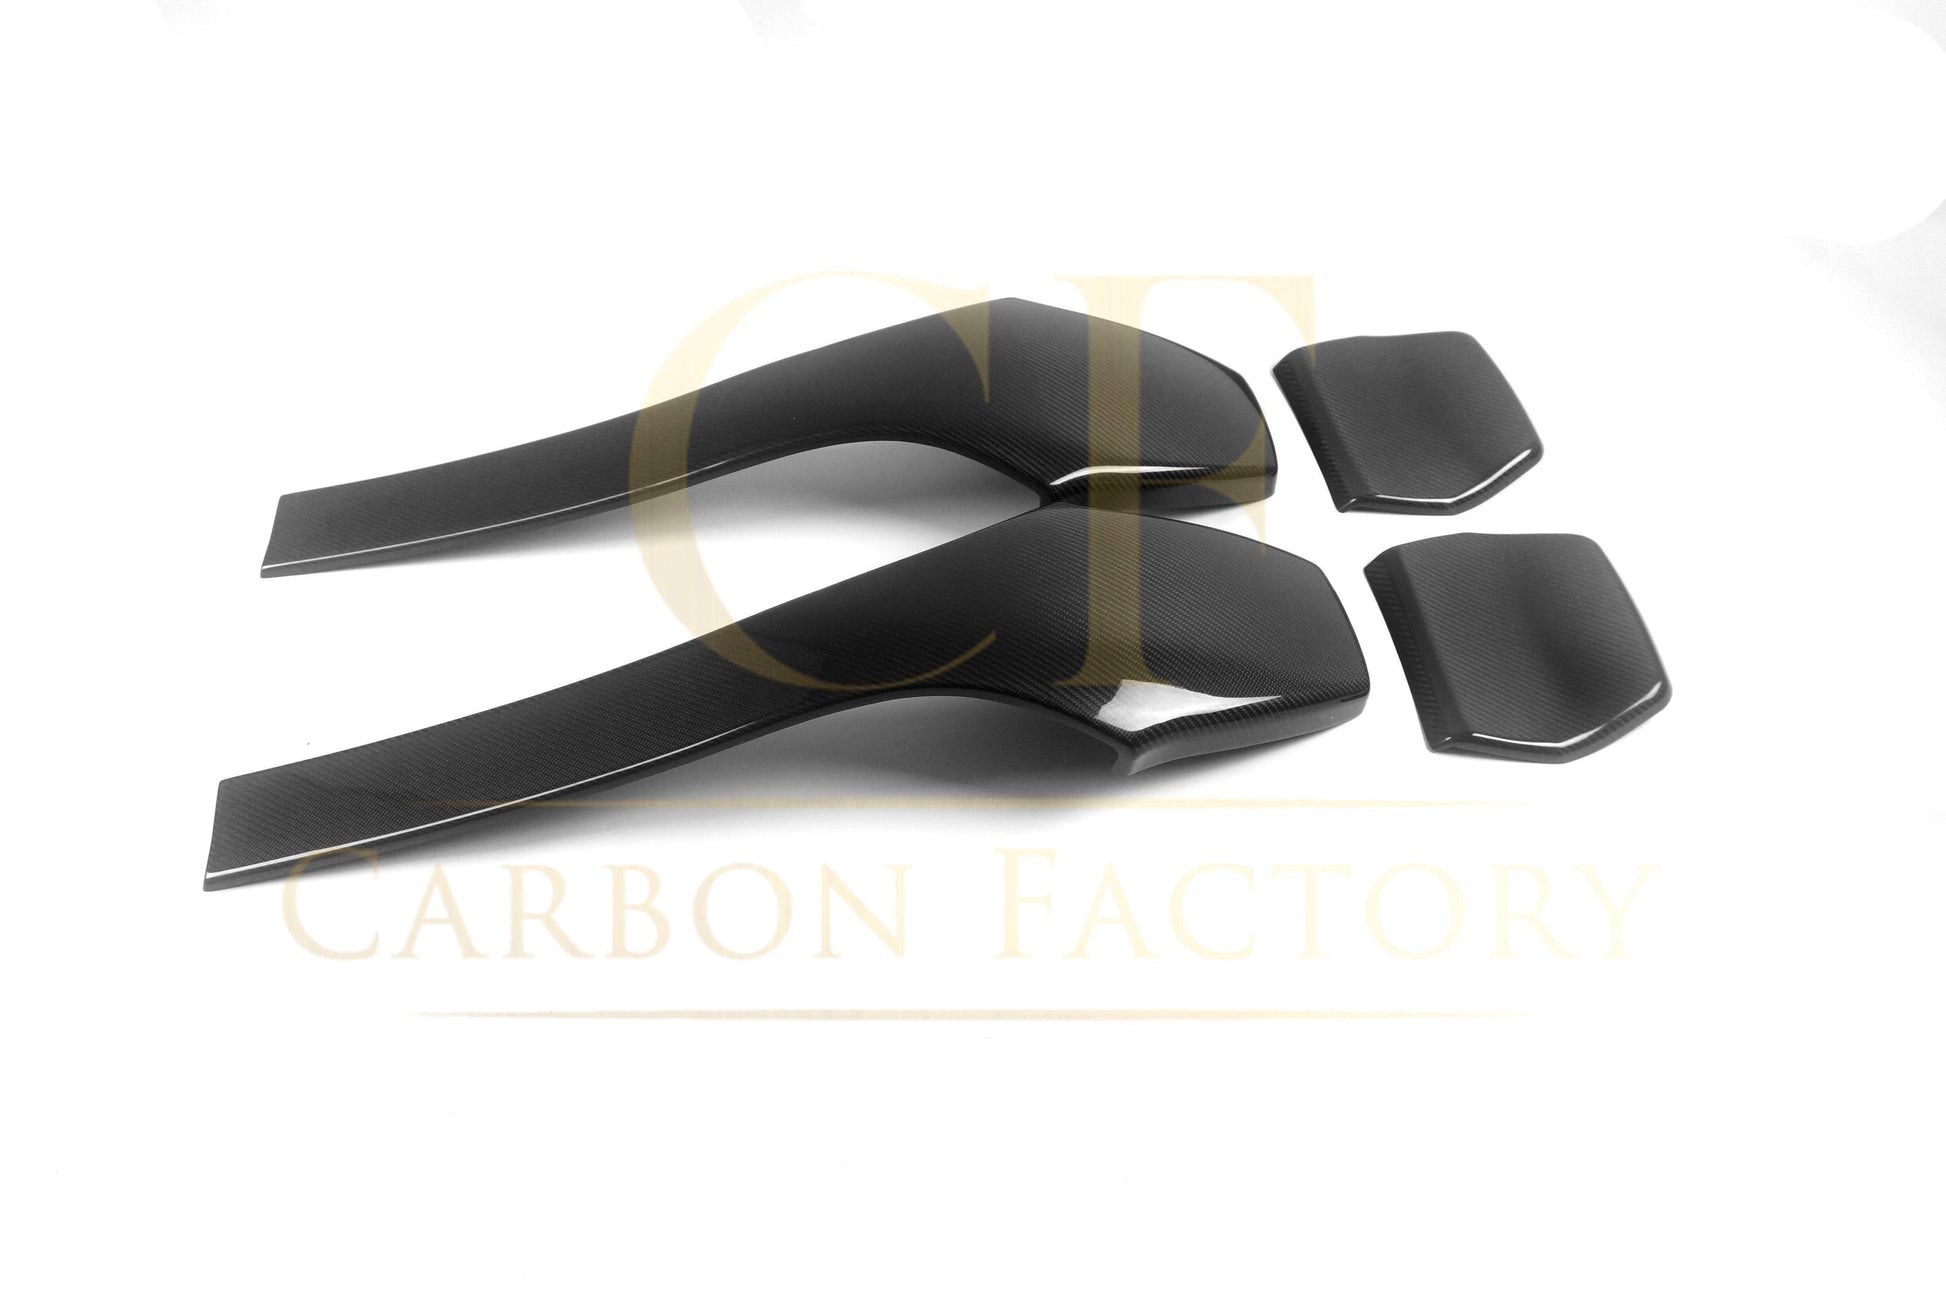 BMW F80 M3 F82 F83 M4 Dry Carbon Fibre Seat Covers 14-20 - Pair-Carbon Factory